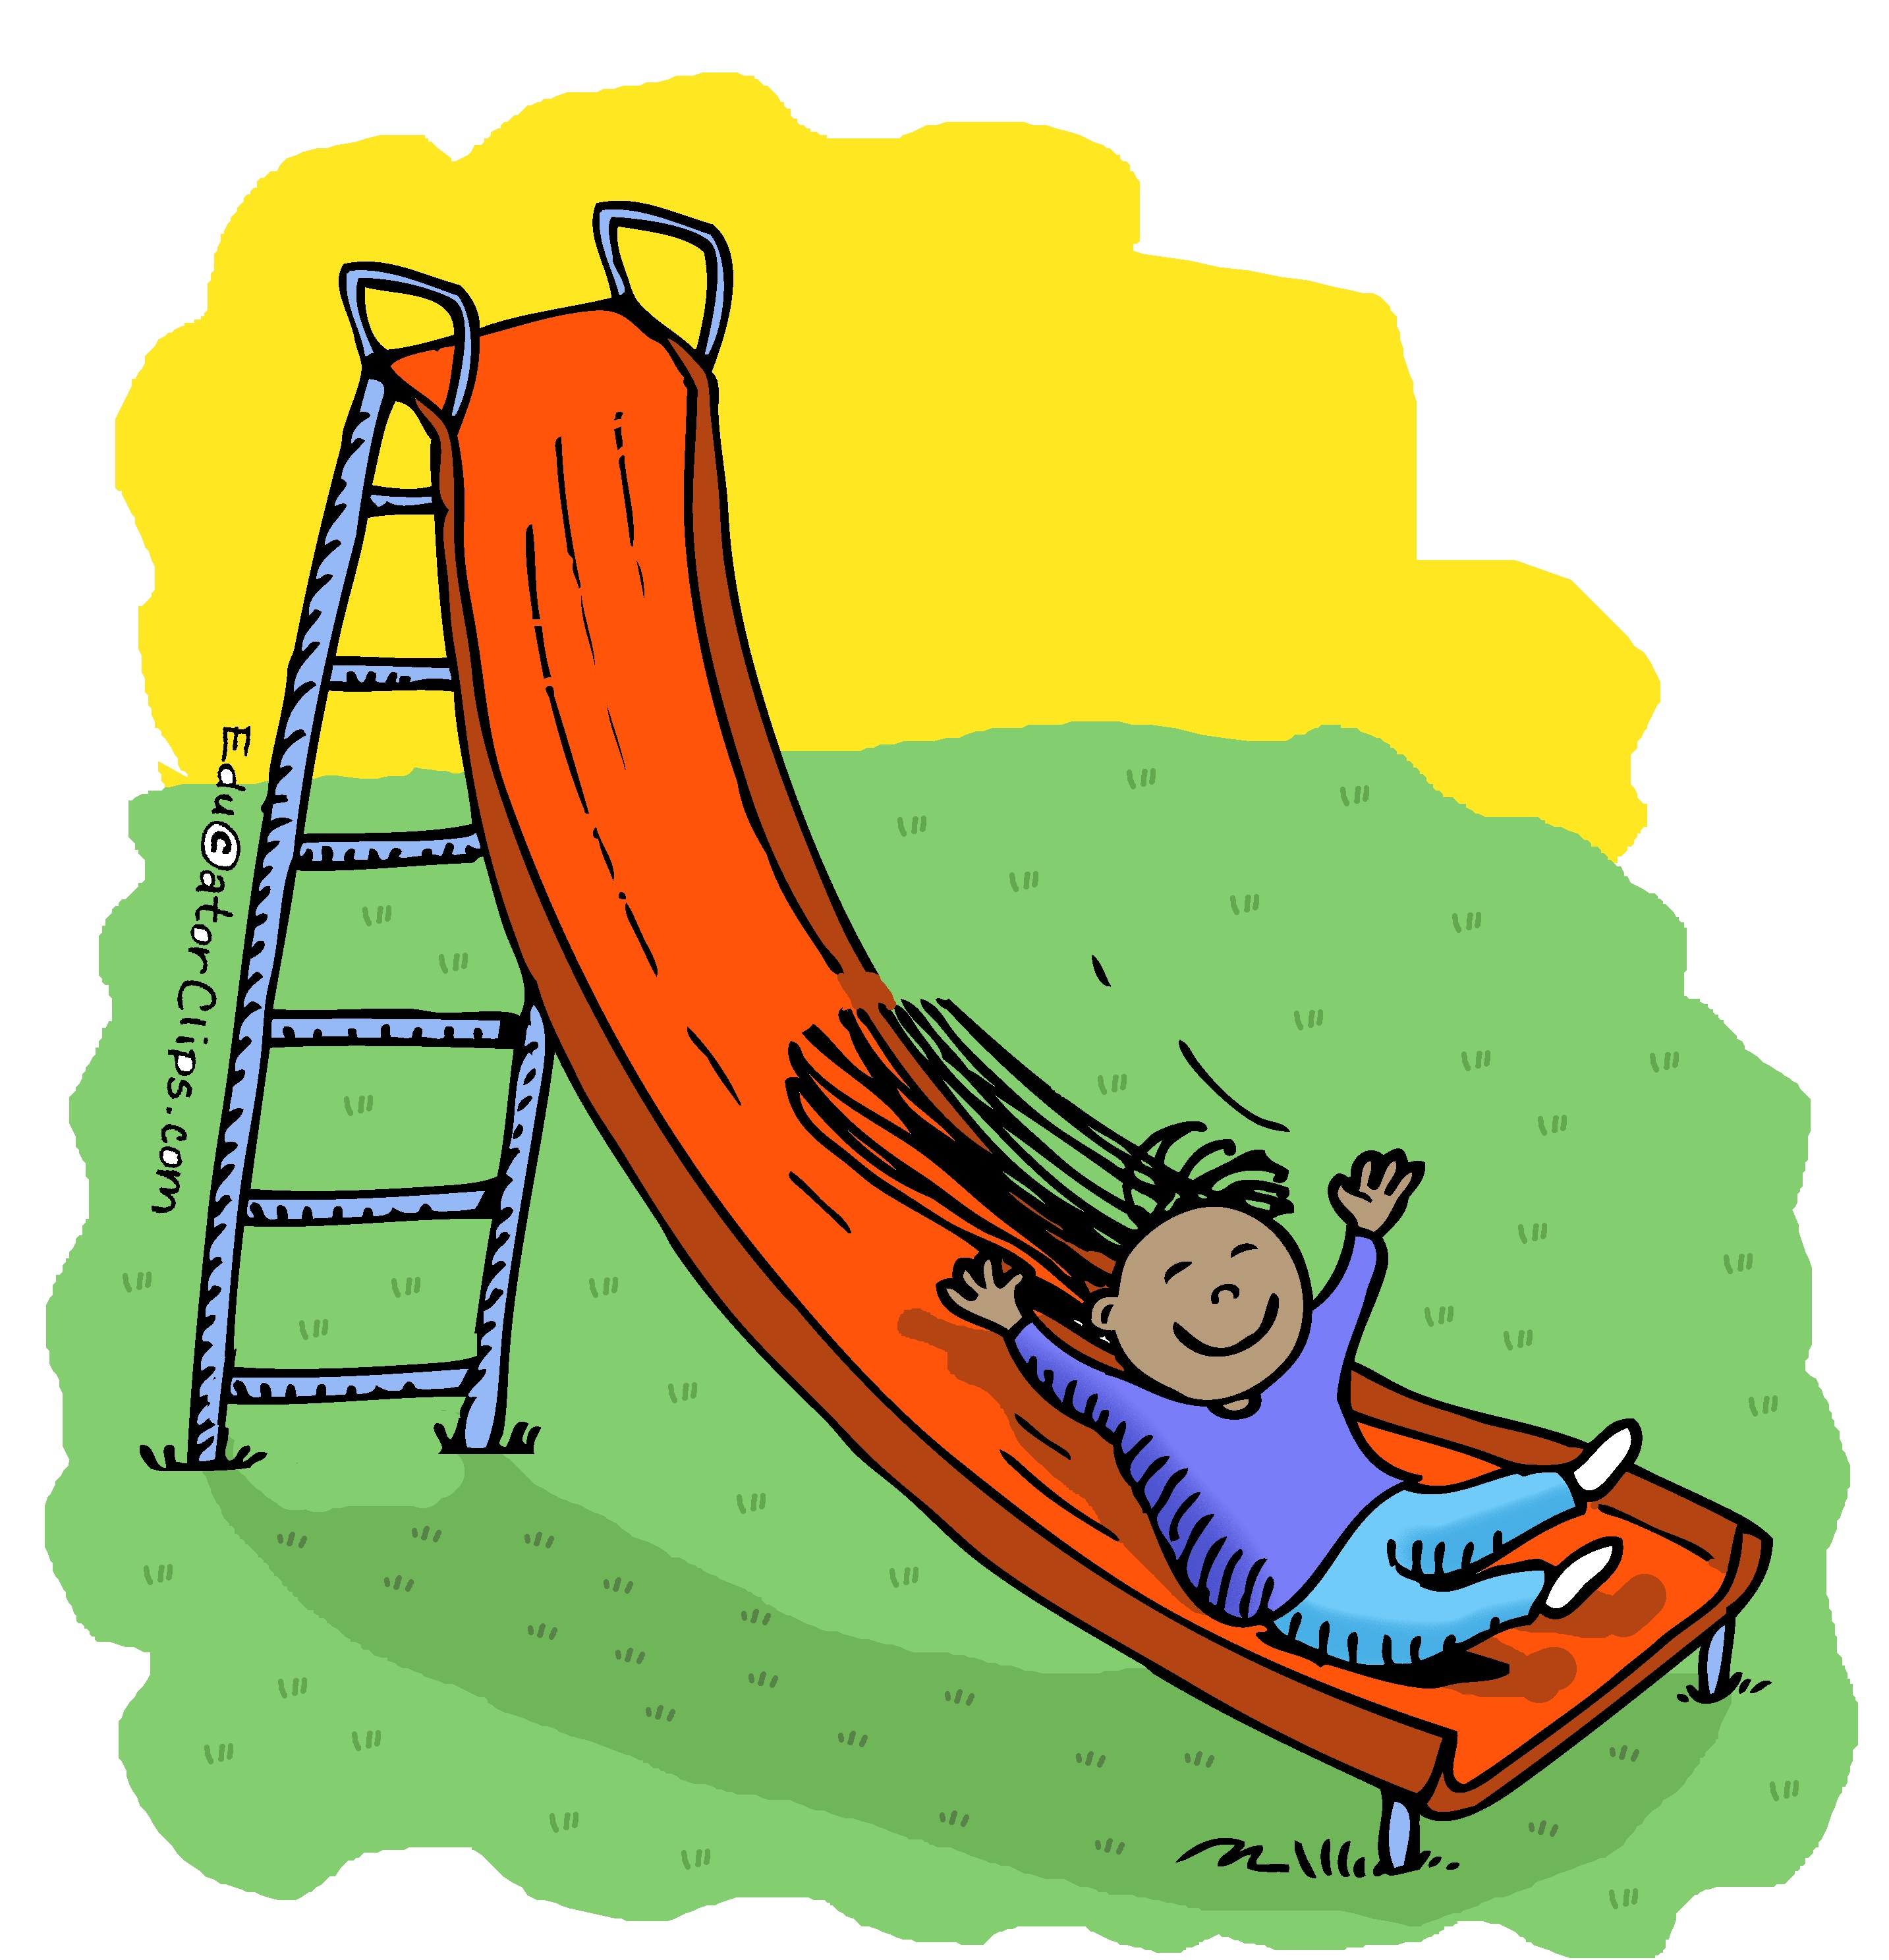 Playground Slide Clip Art